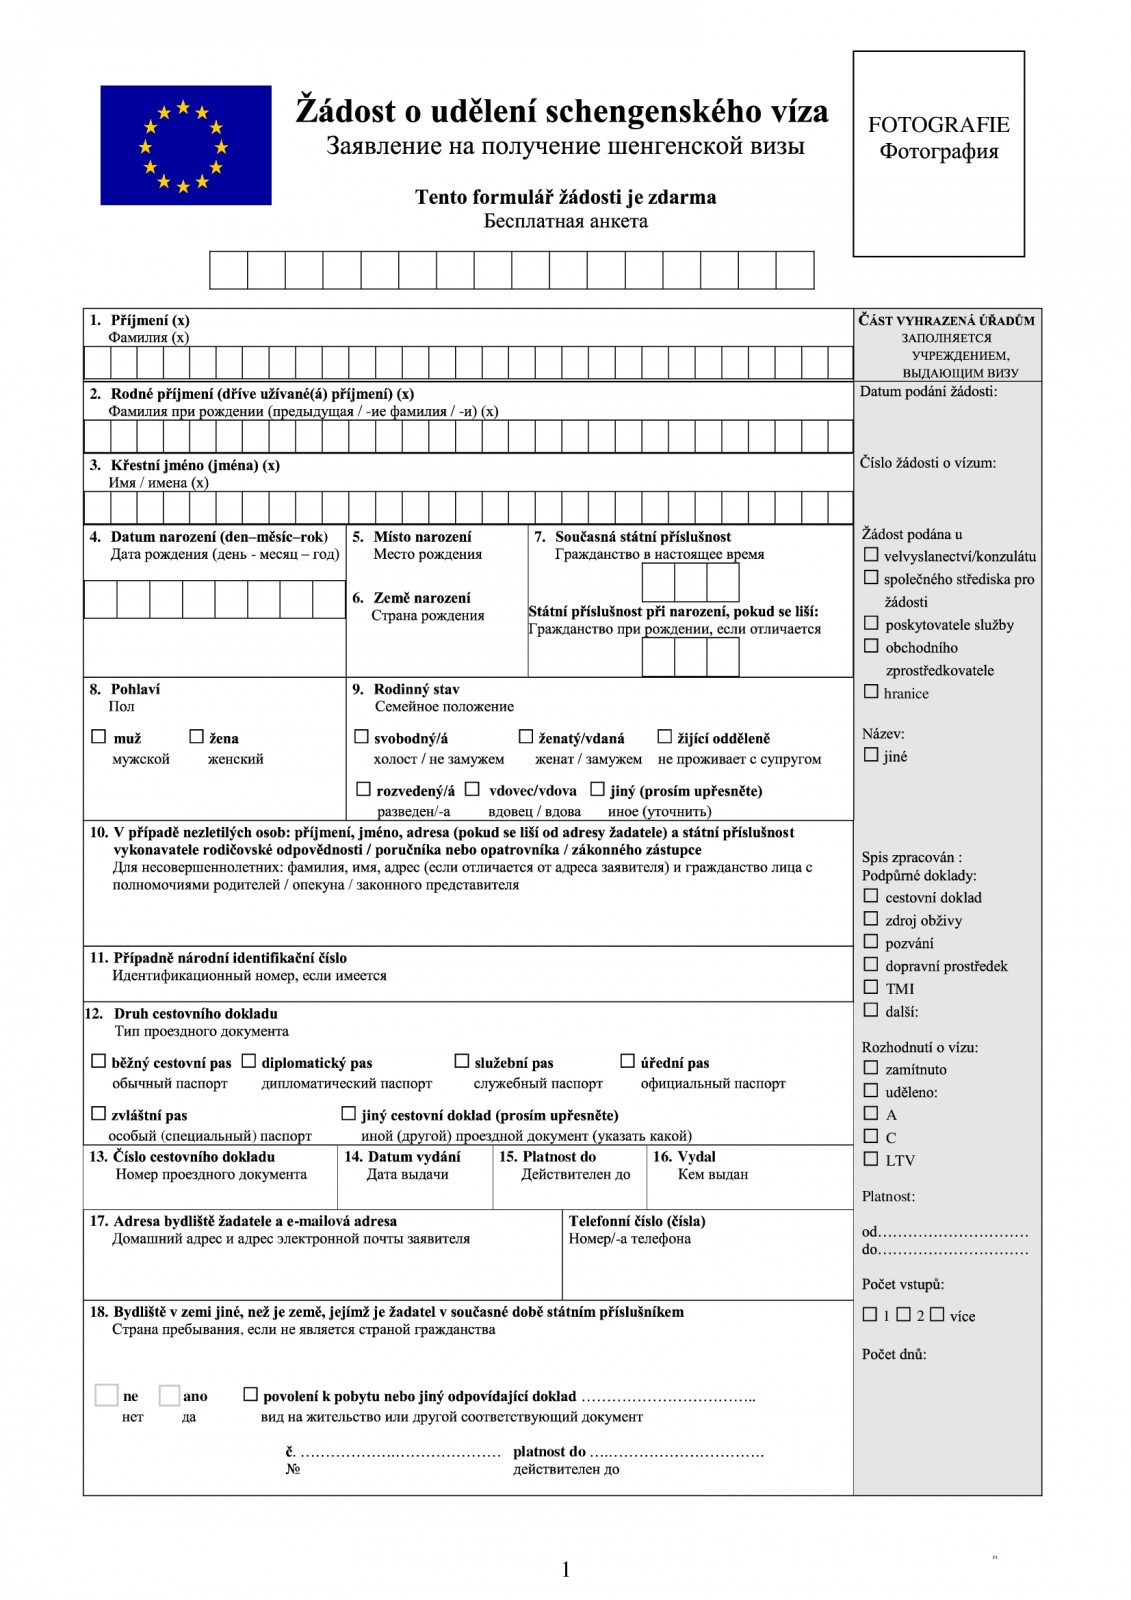 Как правильно заполнить анкету для шенгенской визы в чехию в 2021 году — бланк, образец, инструкция с примерами